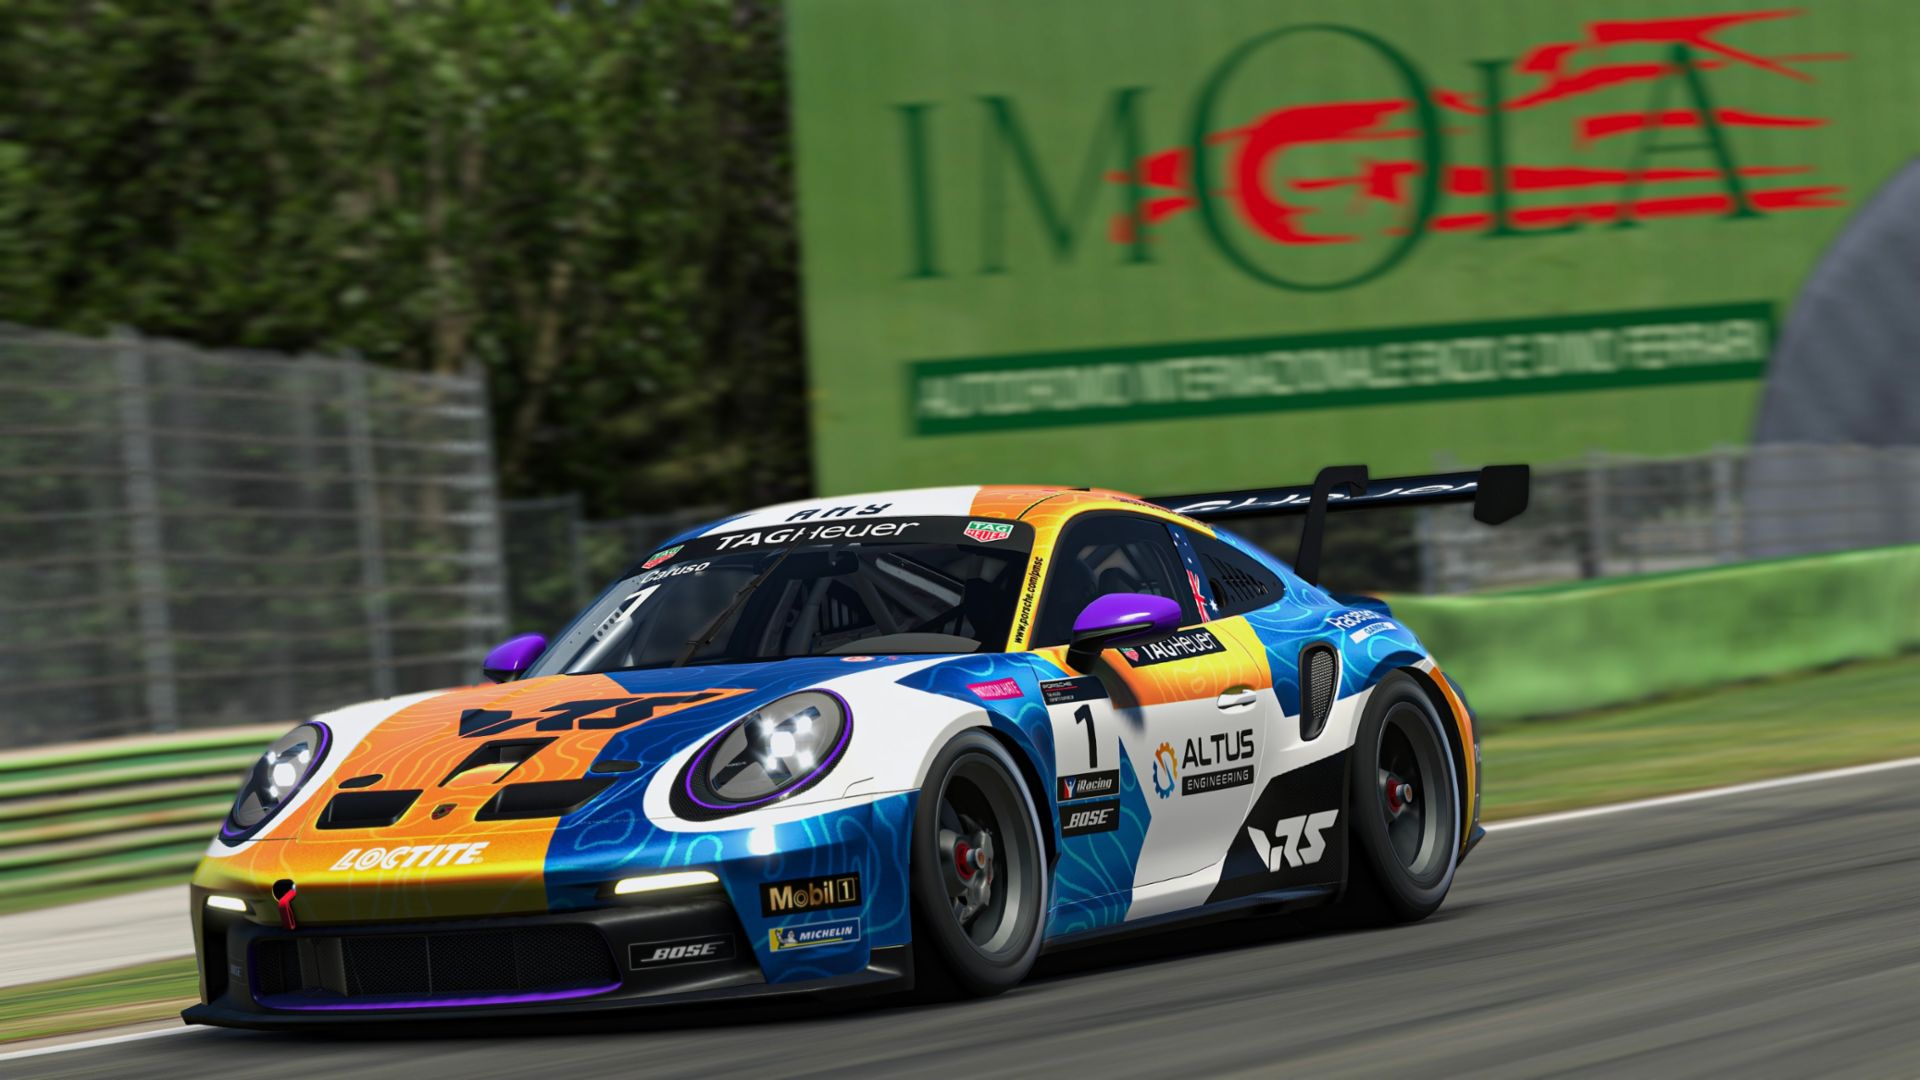 IRacing e Porsche hanno annunciato la settima stagione della Porsche TAG Heuer Esports Supercup